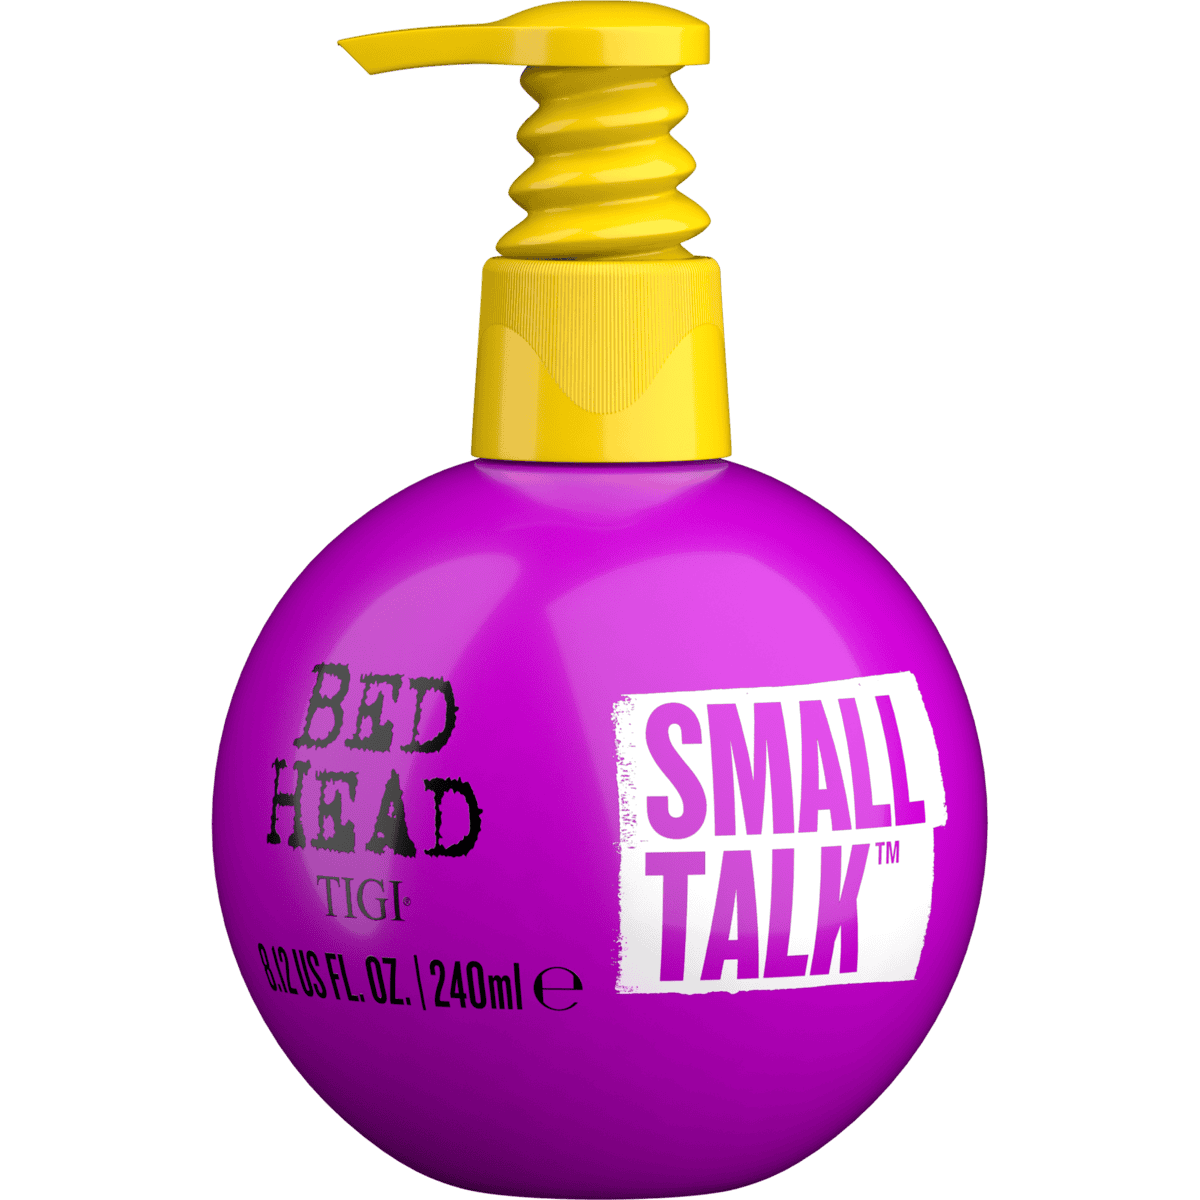 TIGI Bed Head Small Talk 240 ml New